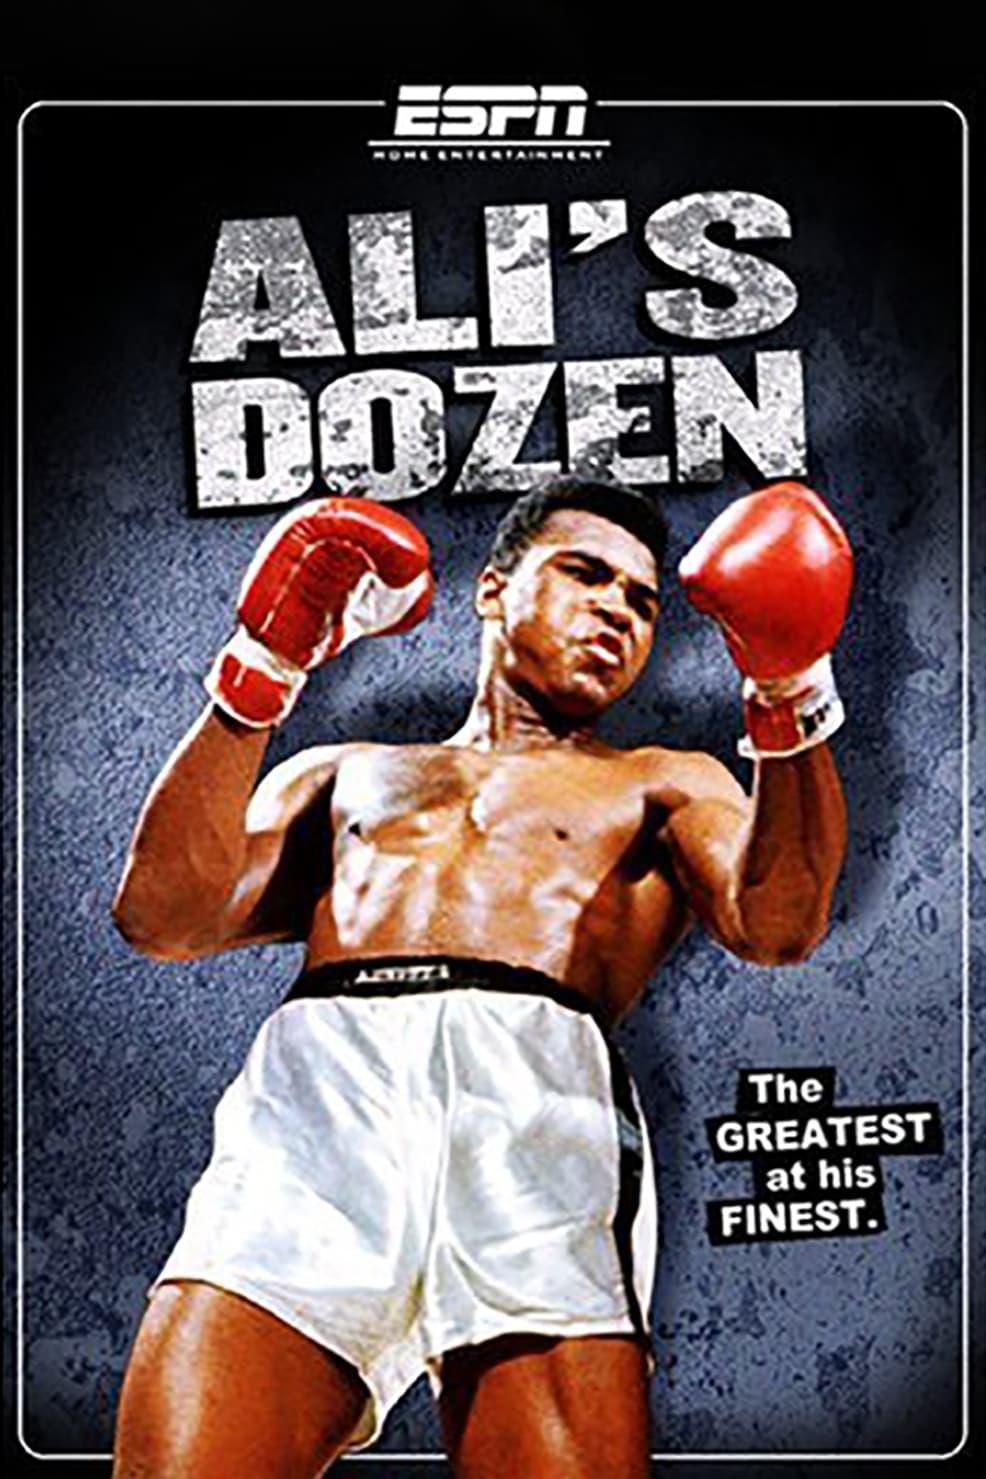 Ali's Dozen poster